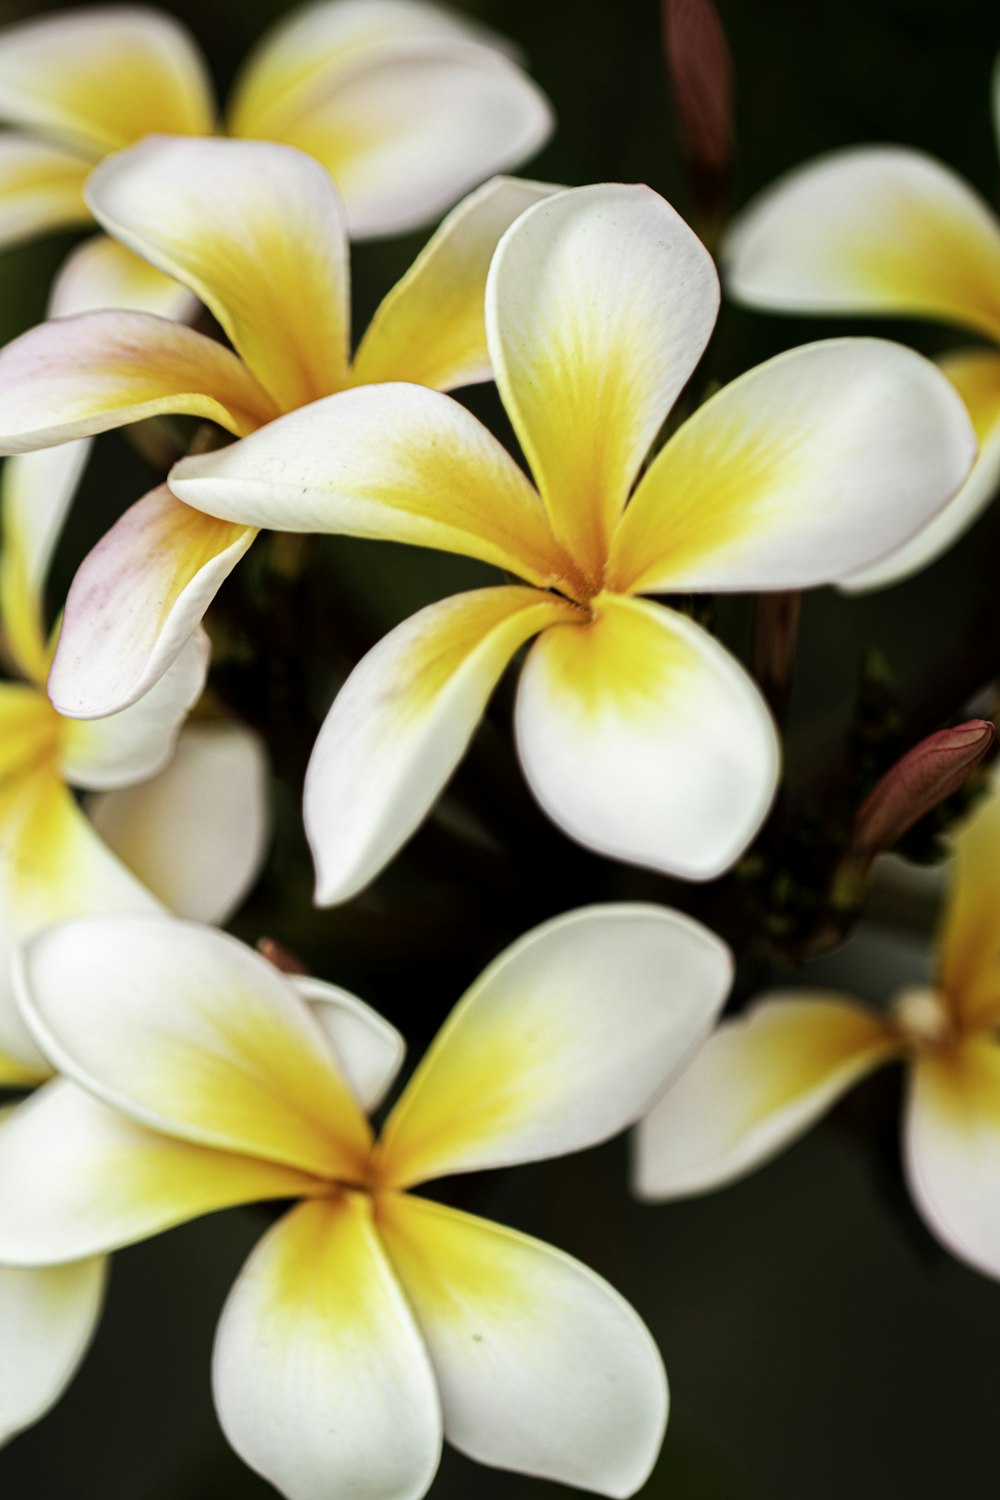 Fleur blanche et jaune en photo macro